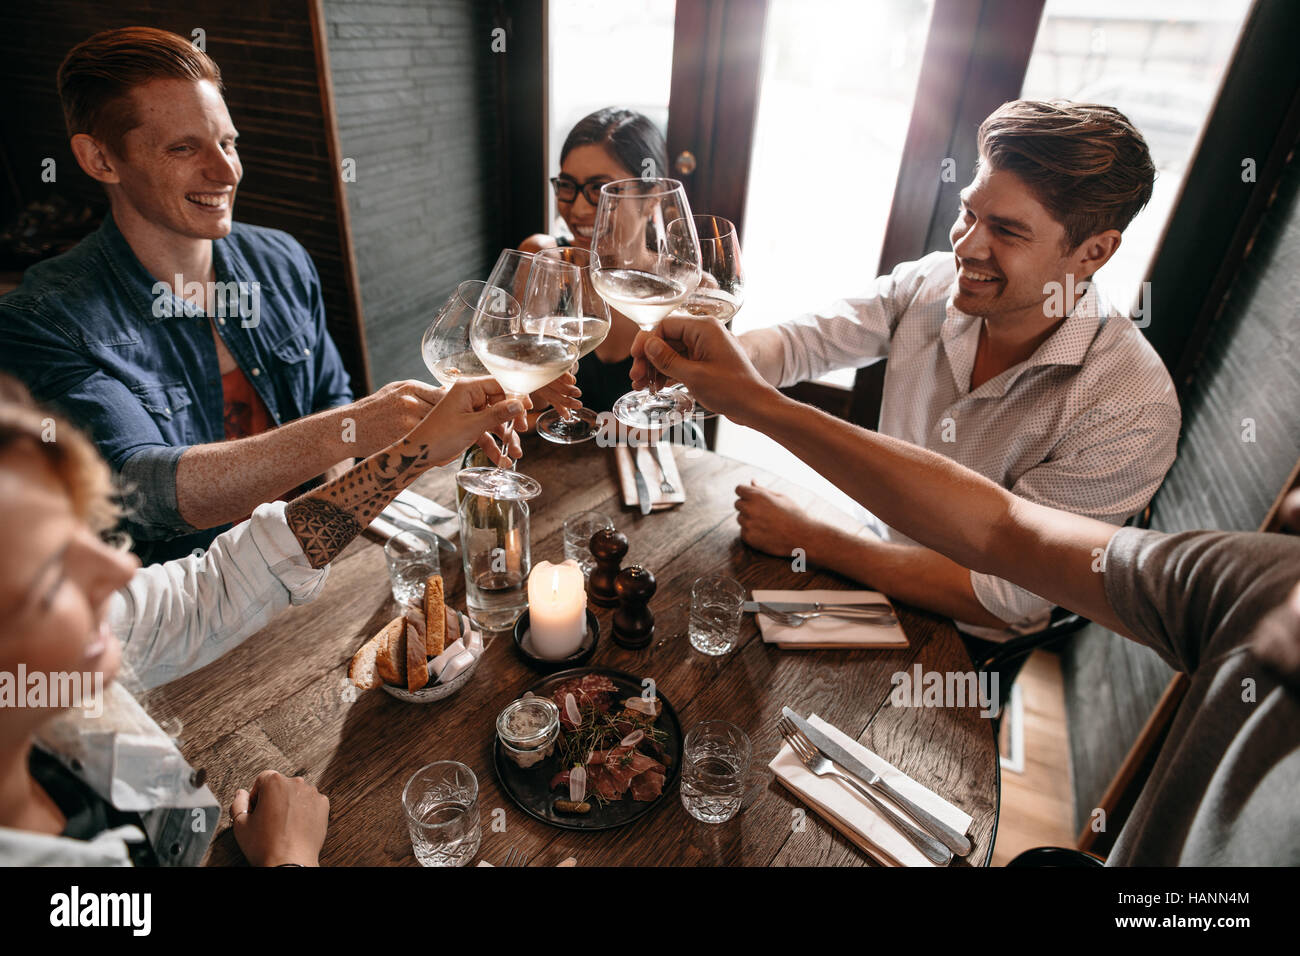 Grupo de hombres y mujeres disfrutando del vino en el restaurante. Los jóvenes amigos del vino tostado en el cafe. Foto de stock